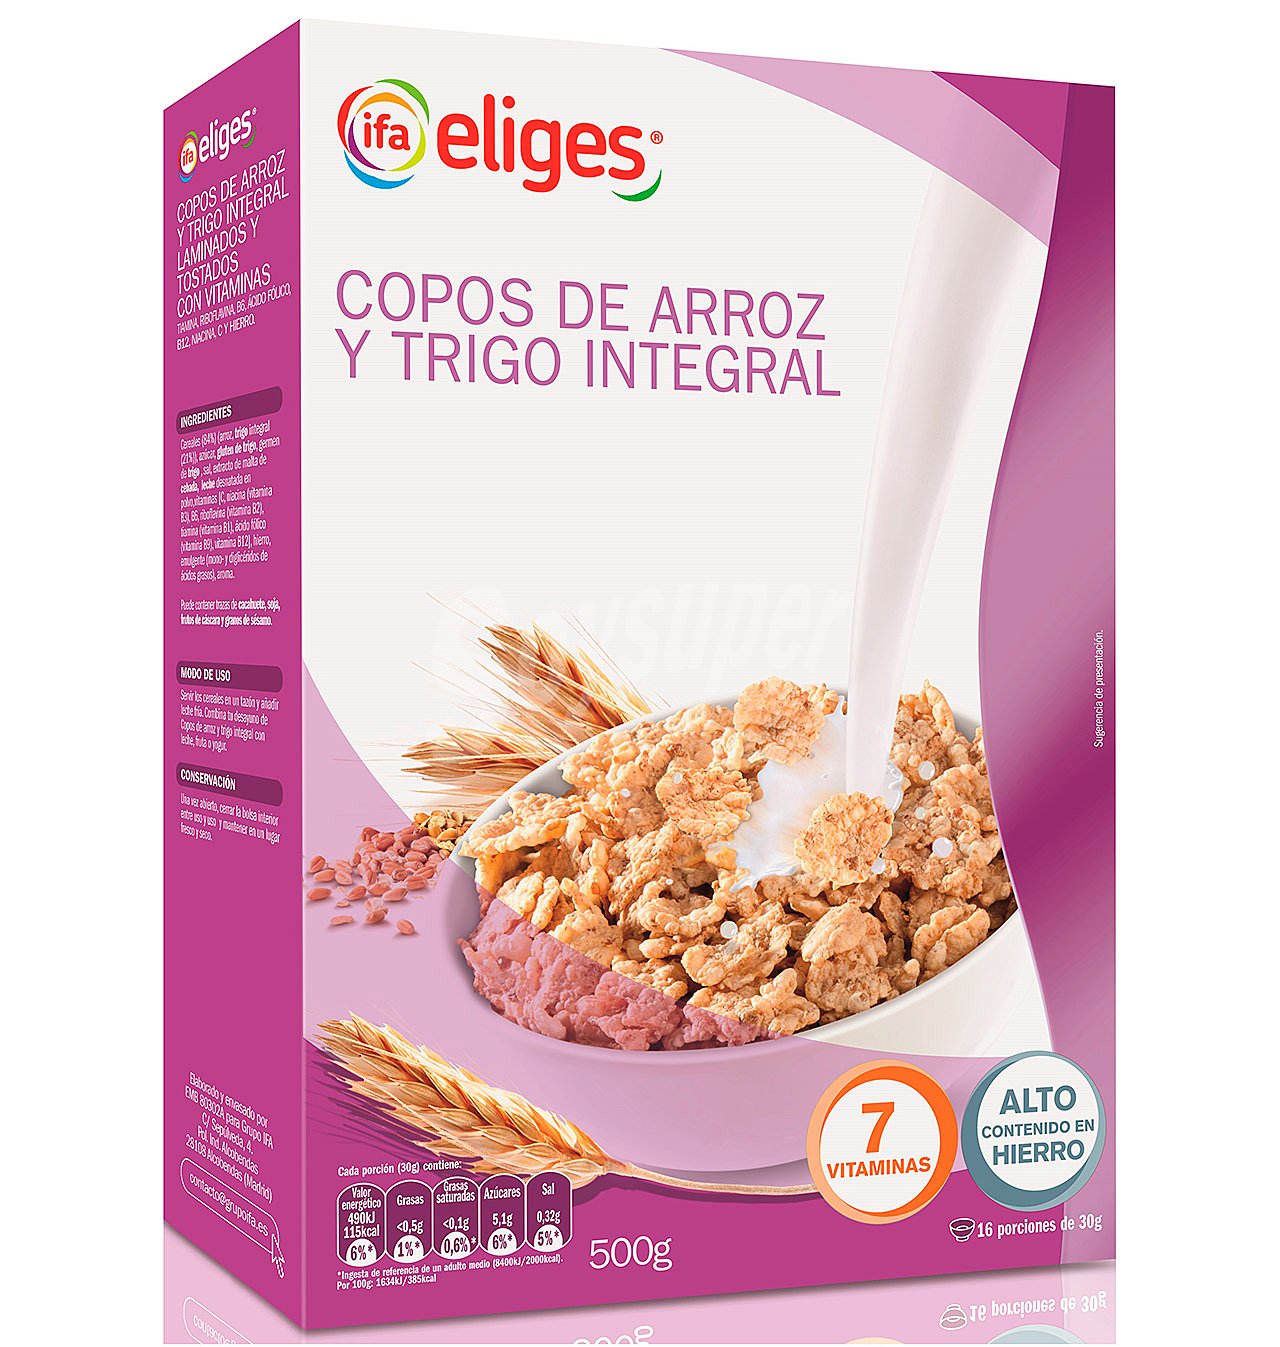 COPOS ARROZ Y TRIGO INTEGRAL IFA ELIGES 500 g.